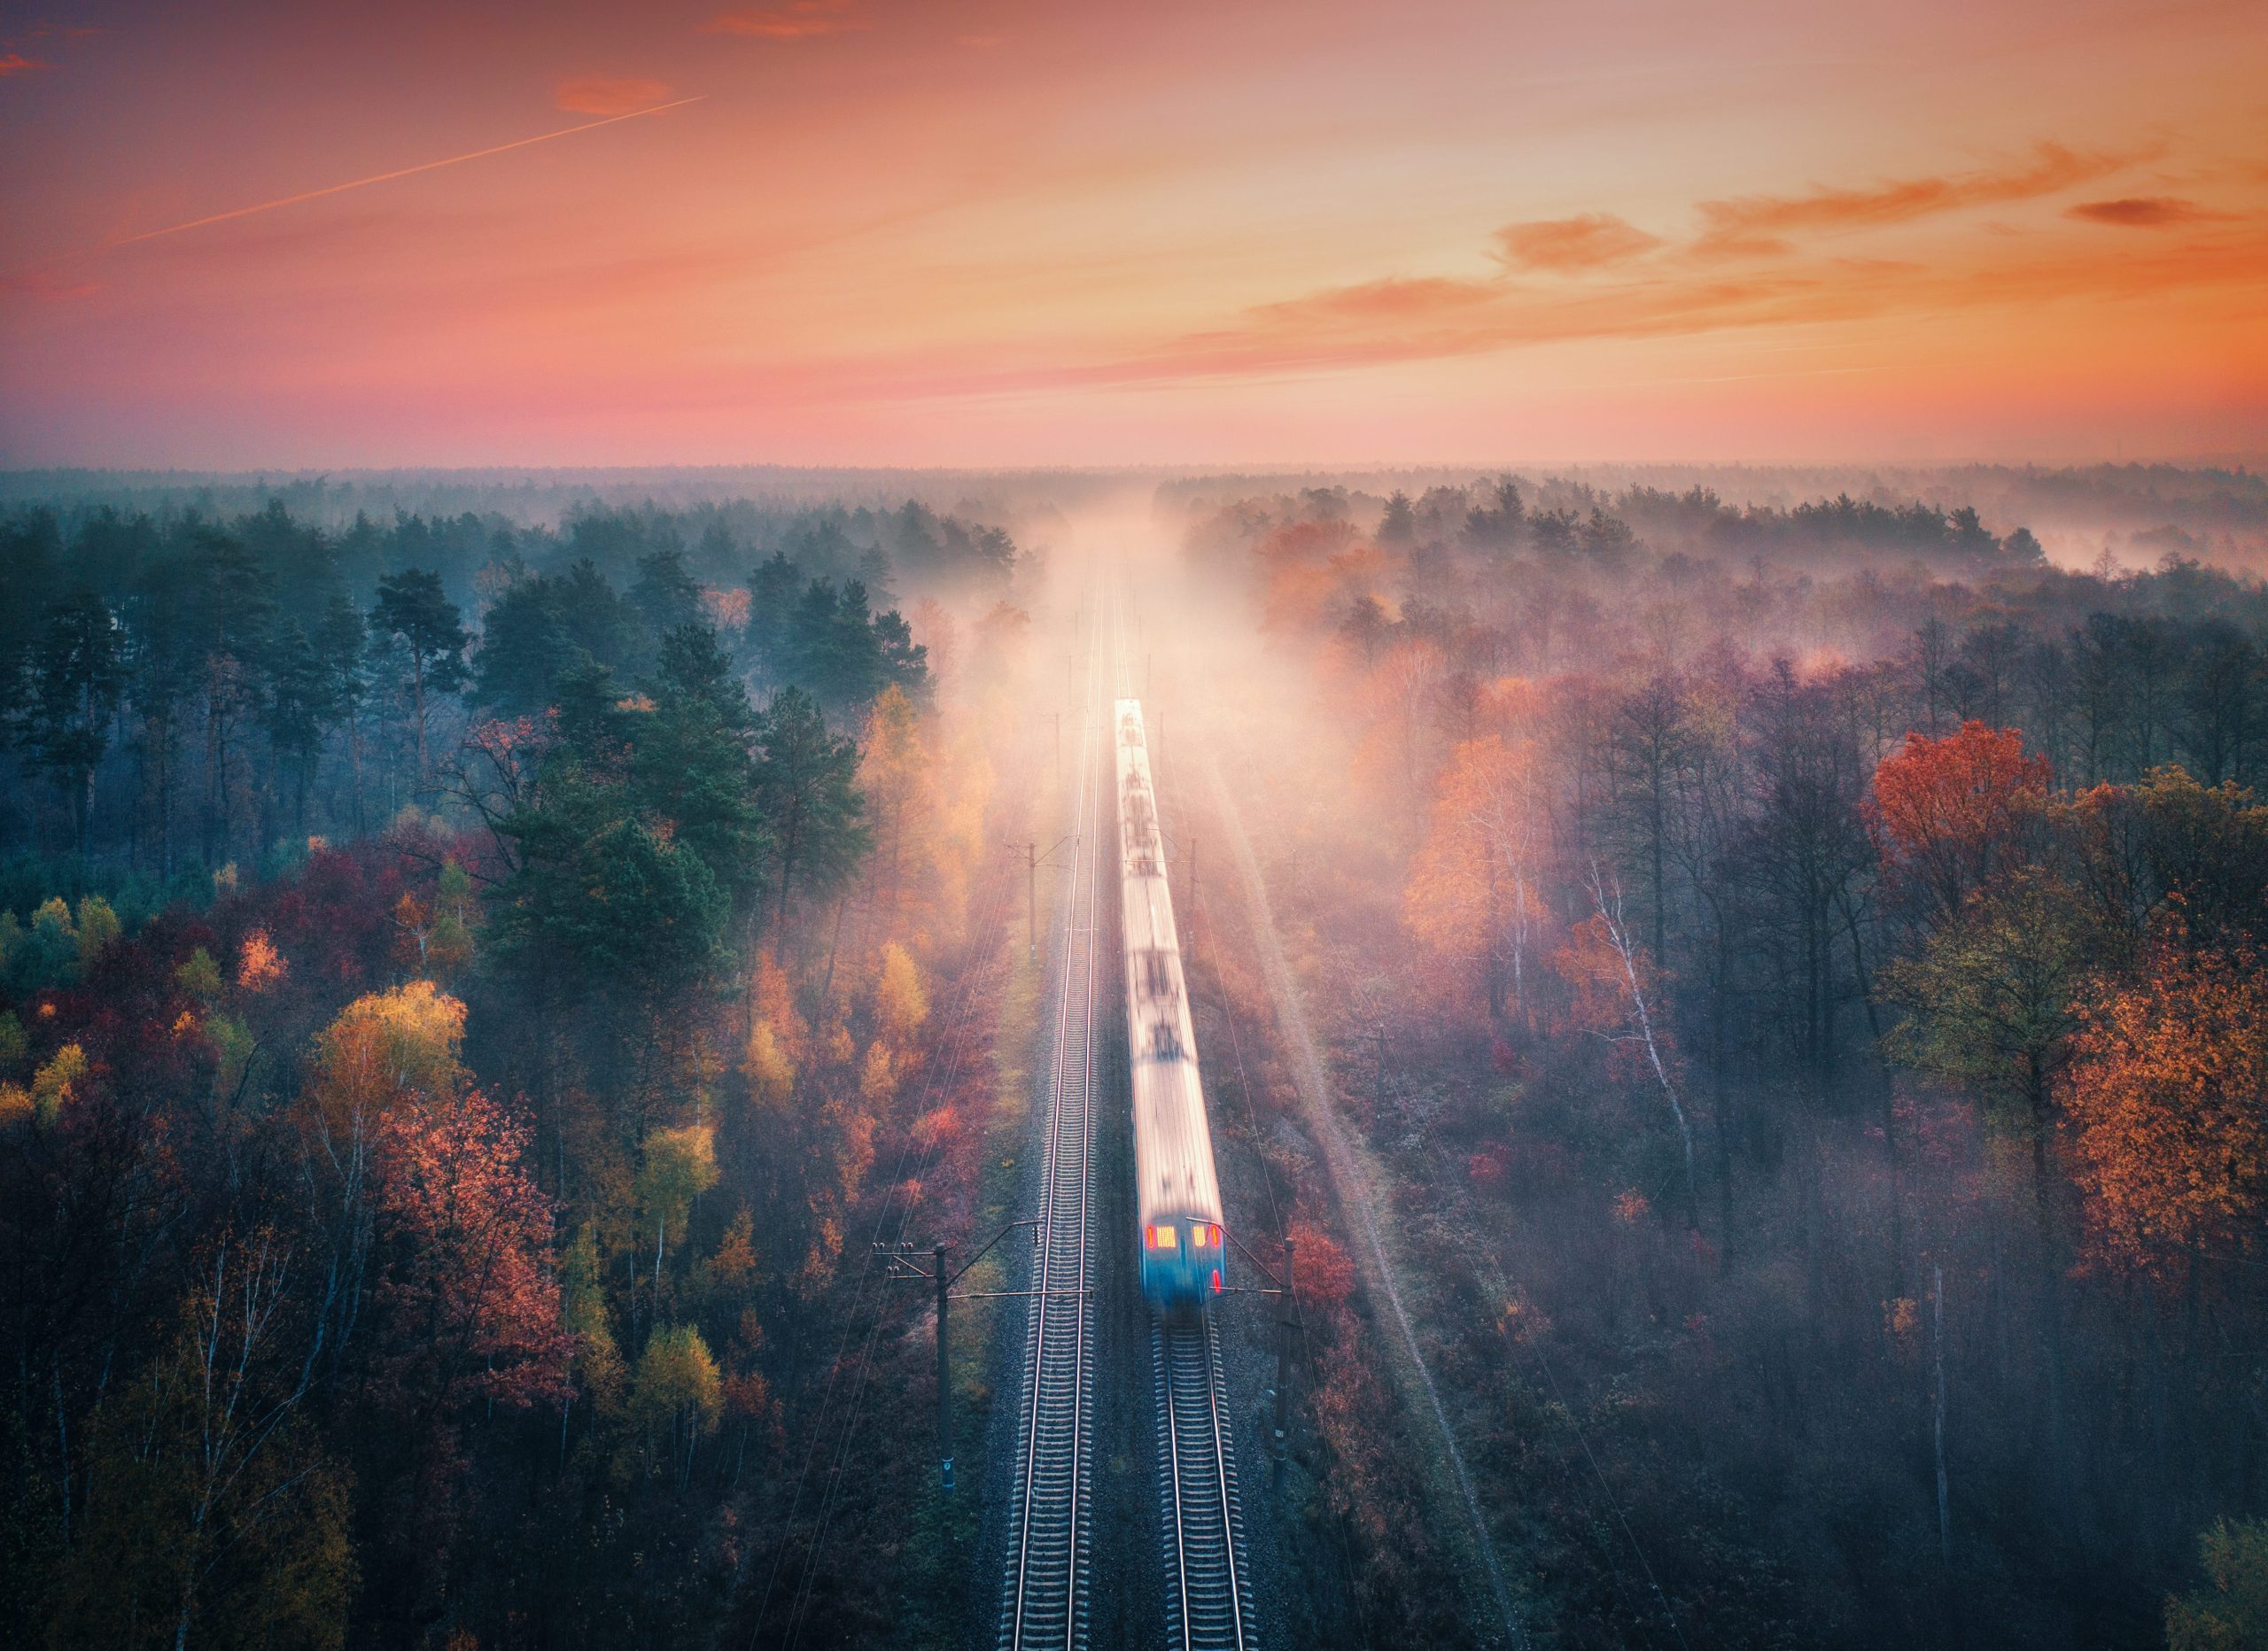 train-in-colorful-forest-in-fog-at-sunrise-in-autu-2023-11-27-05-32-20-utc-min-scaled.jpg